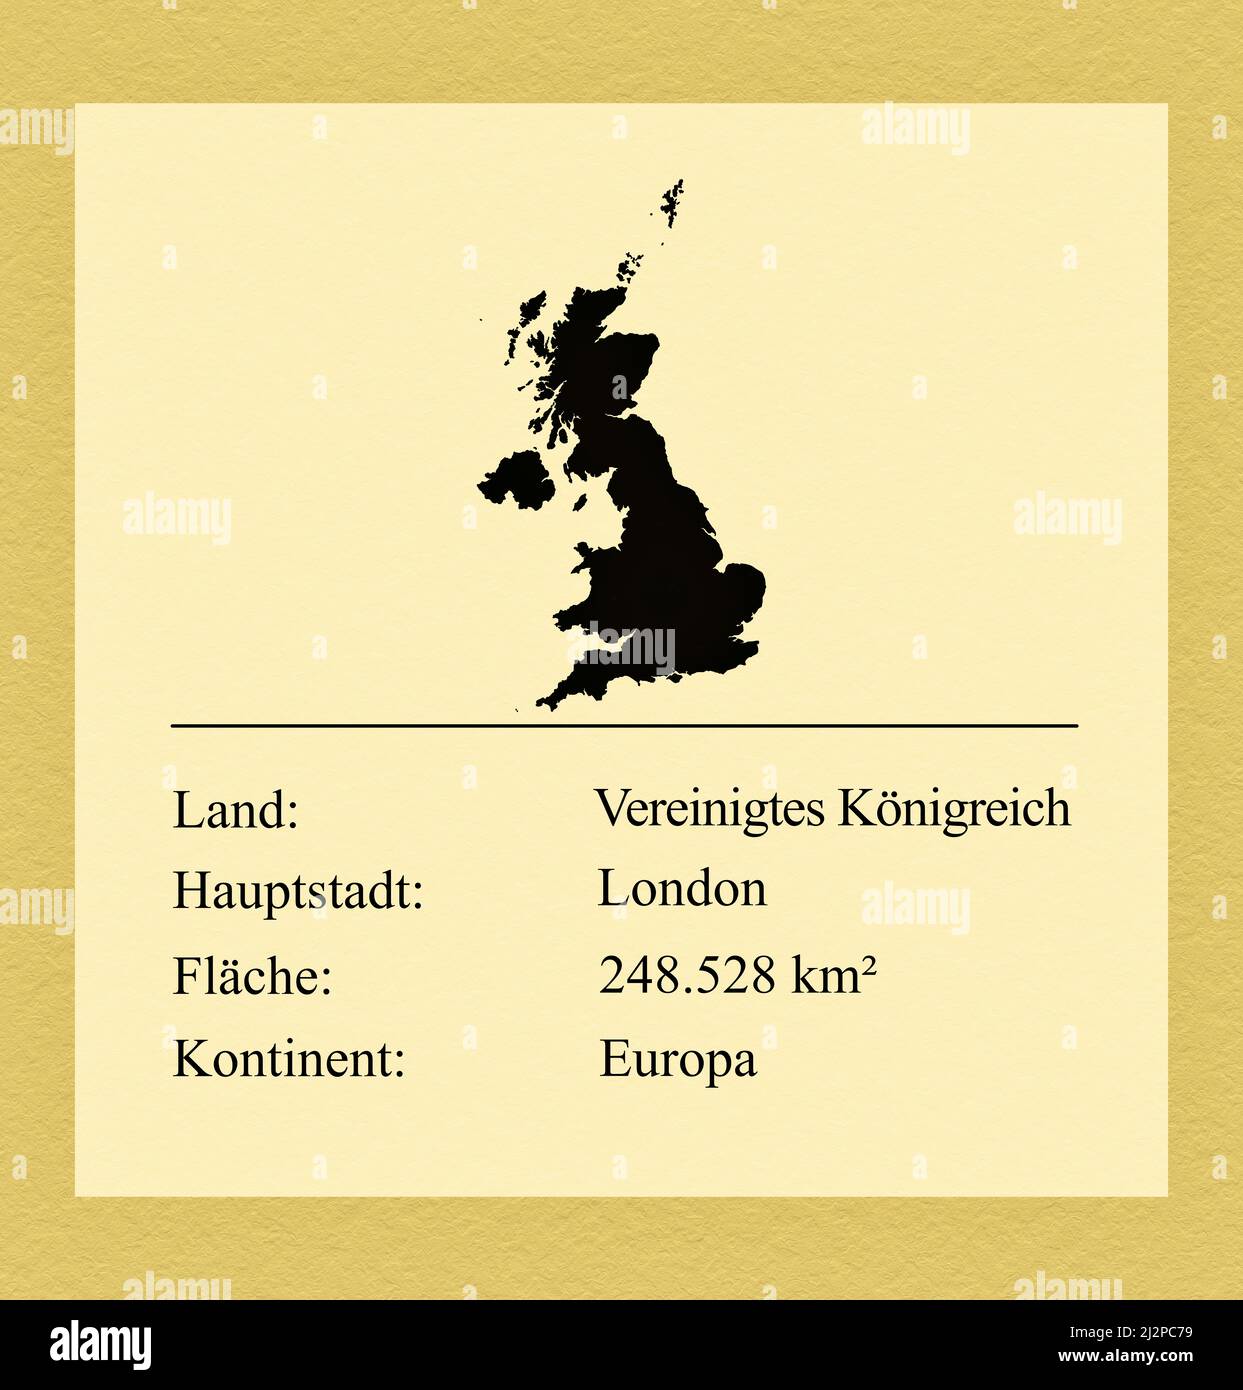 Umrisse des Vereinigten Königreiches, darunter ein kleiner Steckbrief mit Ländernamen, Hauptstadt, Fläche und Kontinent Stock Photo